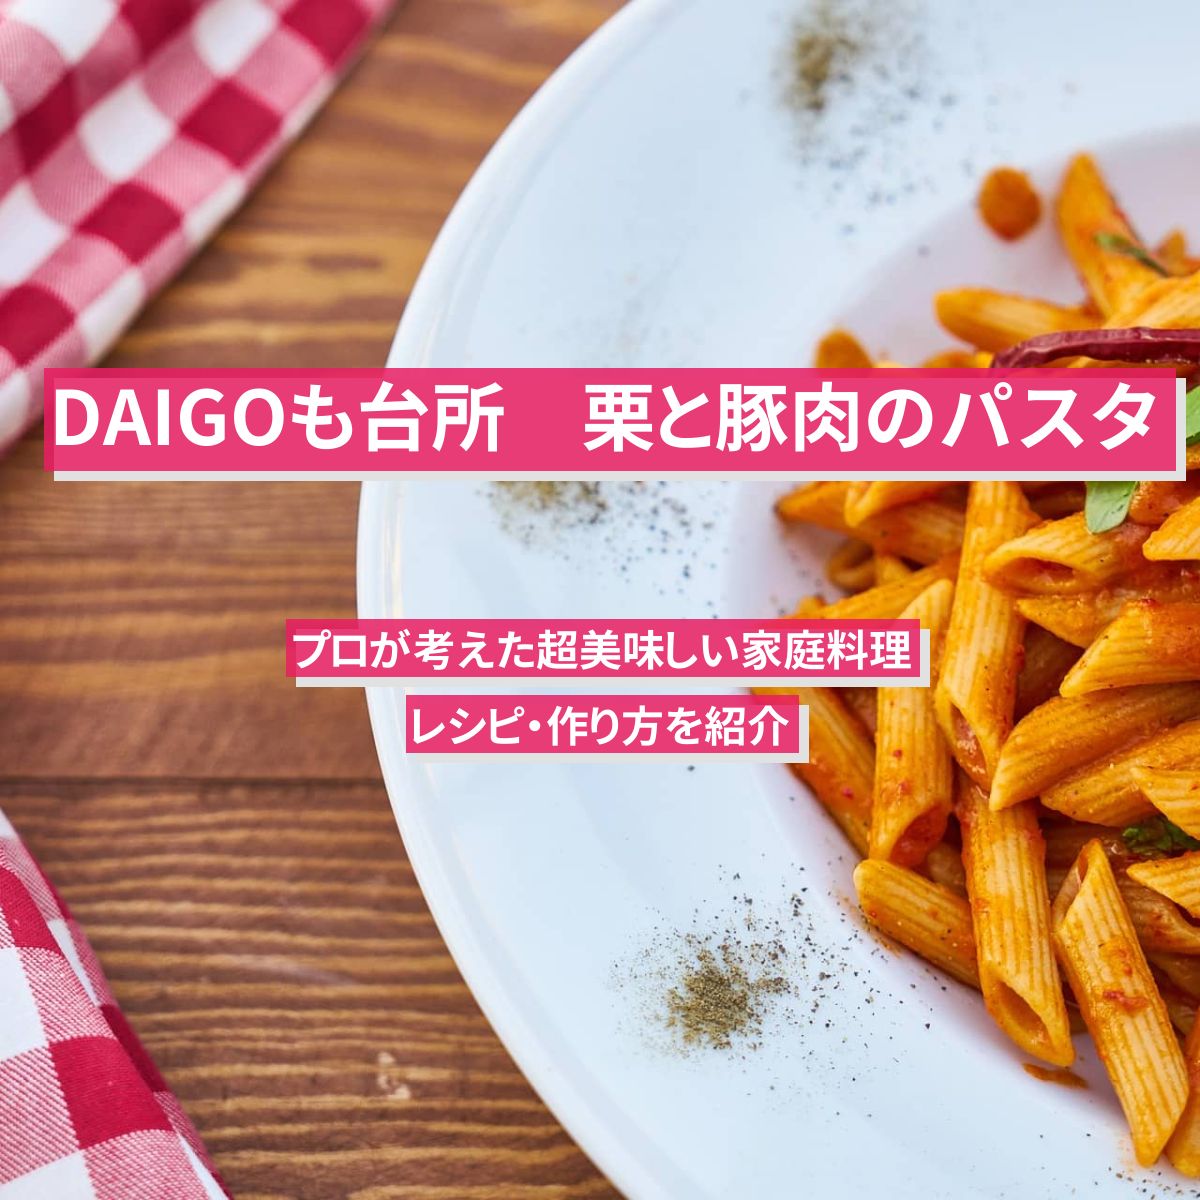 【DAIGOも台所】『栗と豚肉のパスタ』のレシピ・作り方を紹介